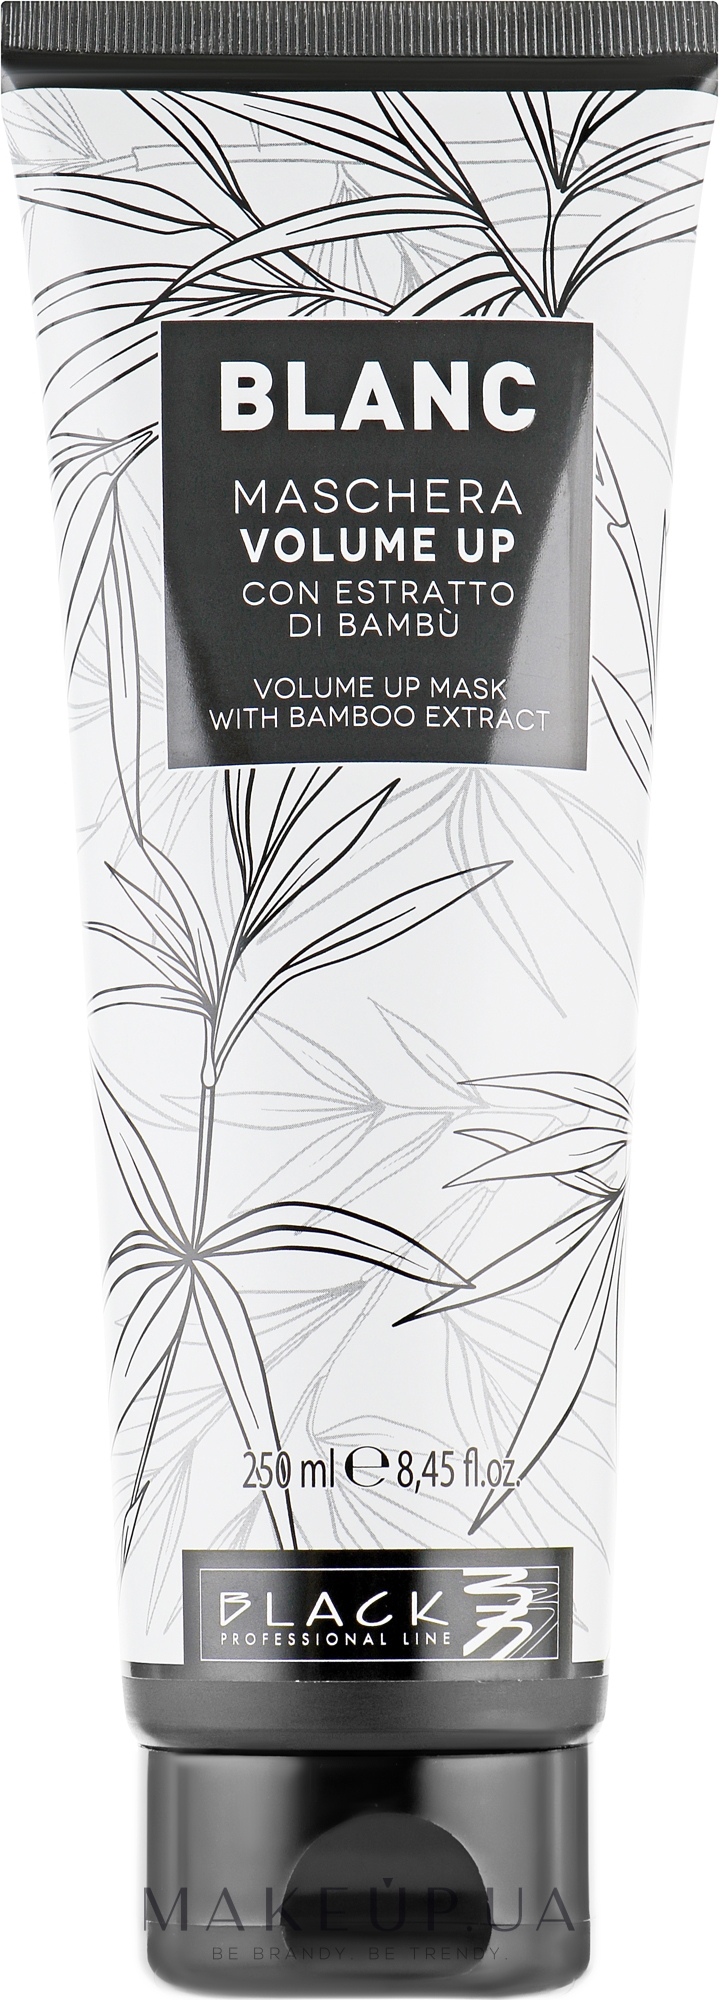 Маска для увеличения объема волос - Black Professional Line Blanc Volume Up Mask — фото 250ml